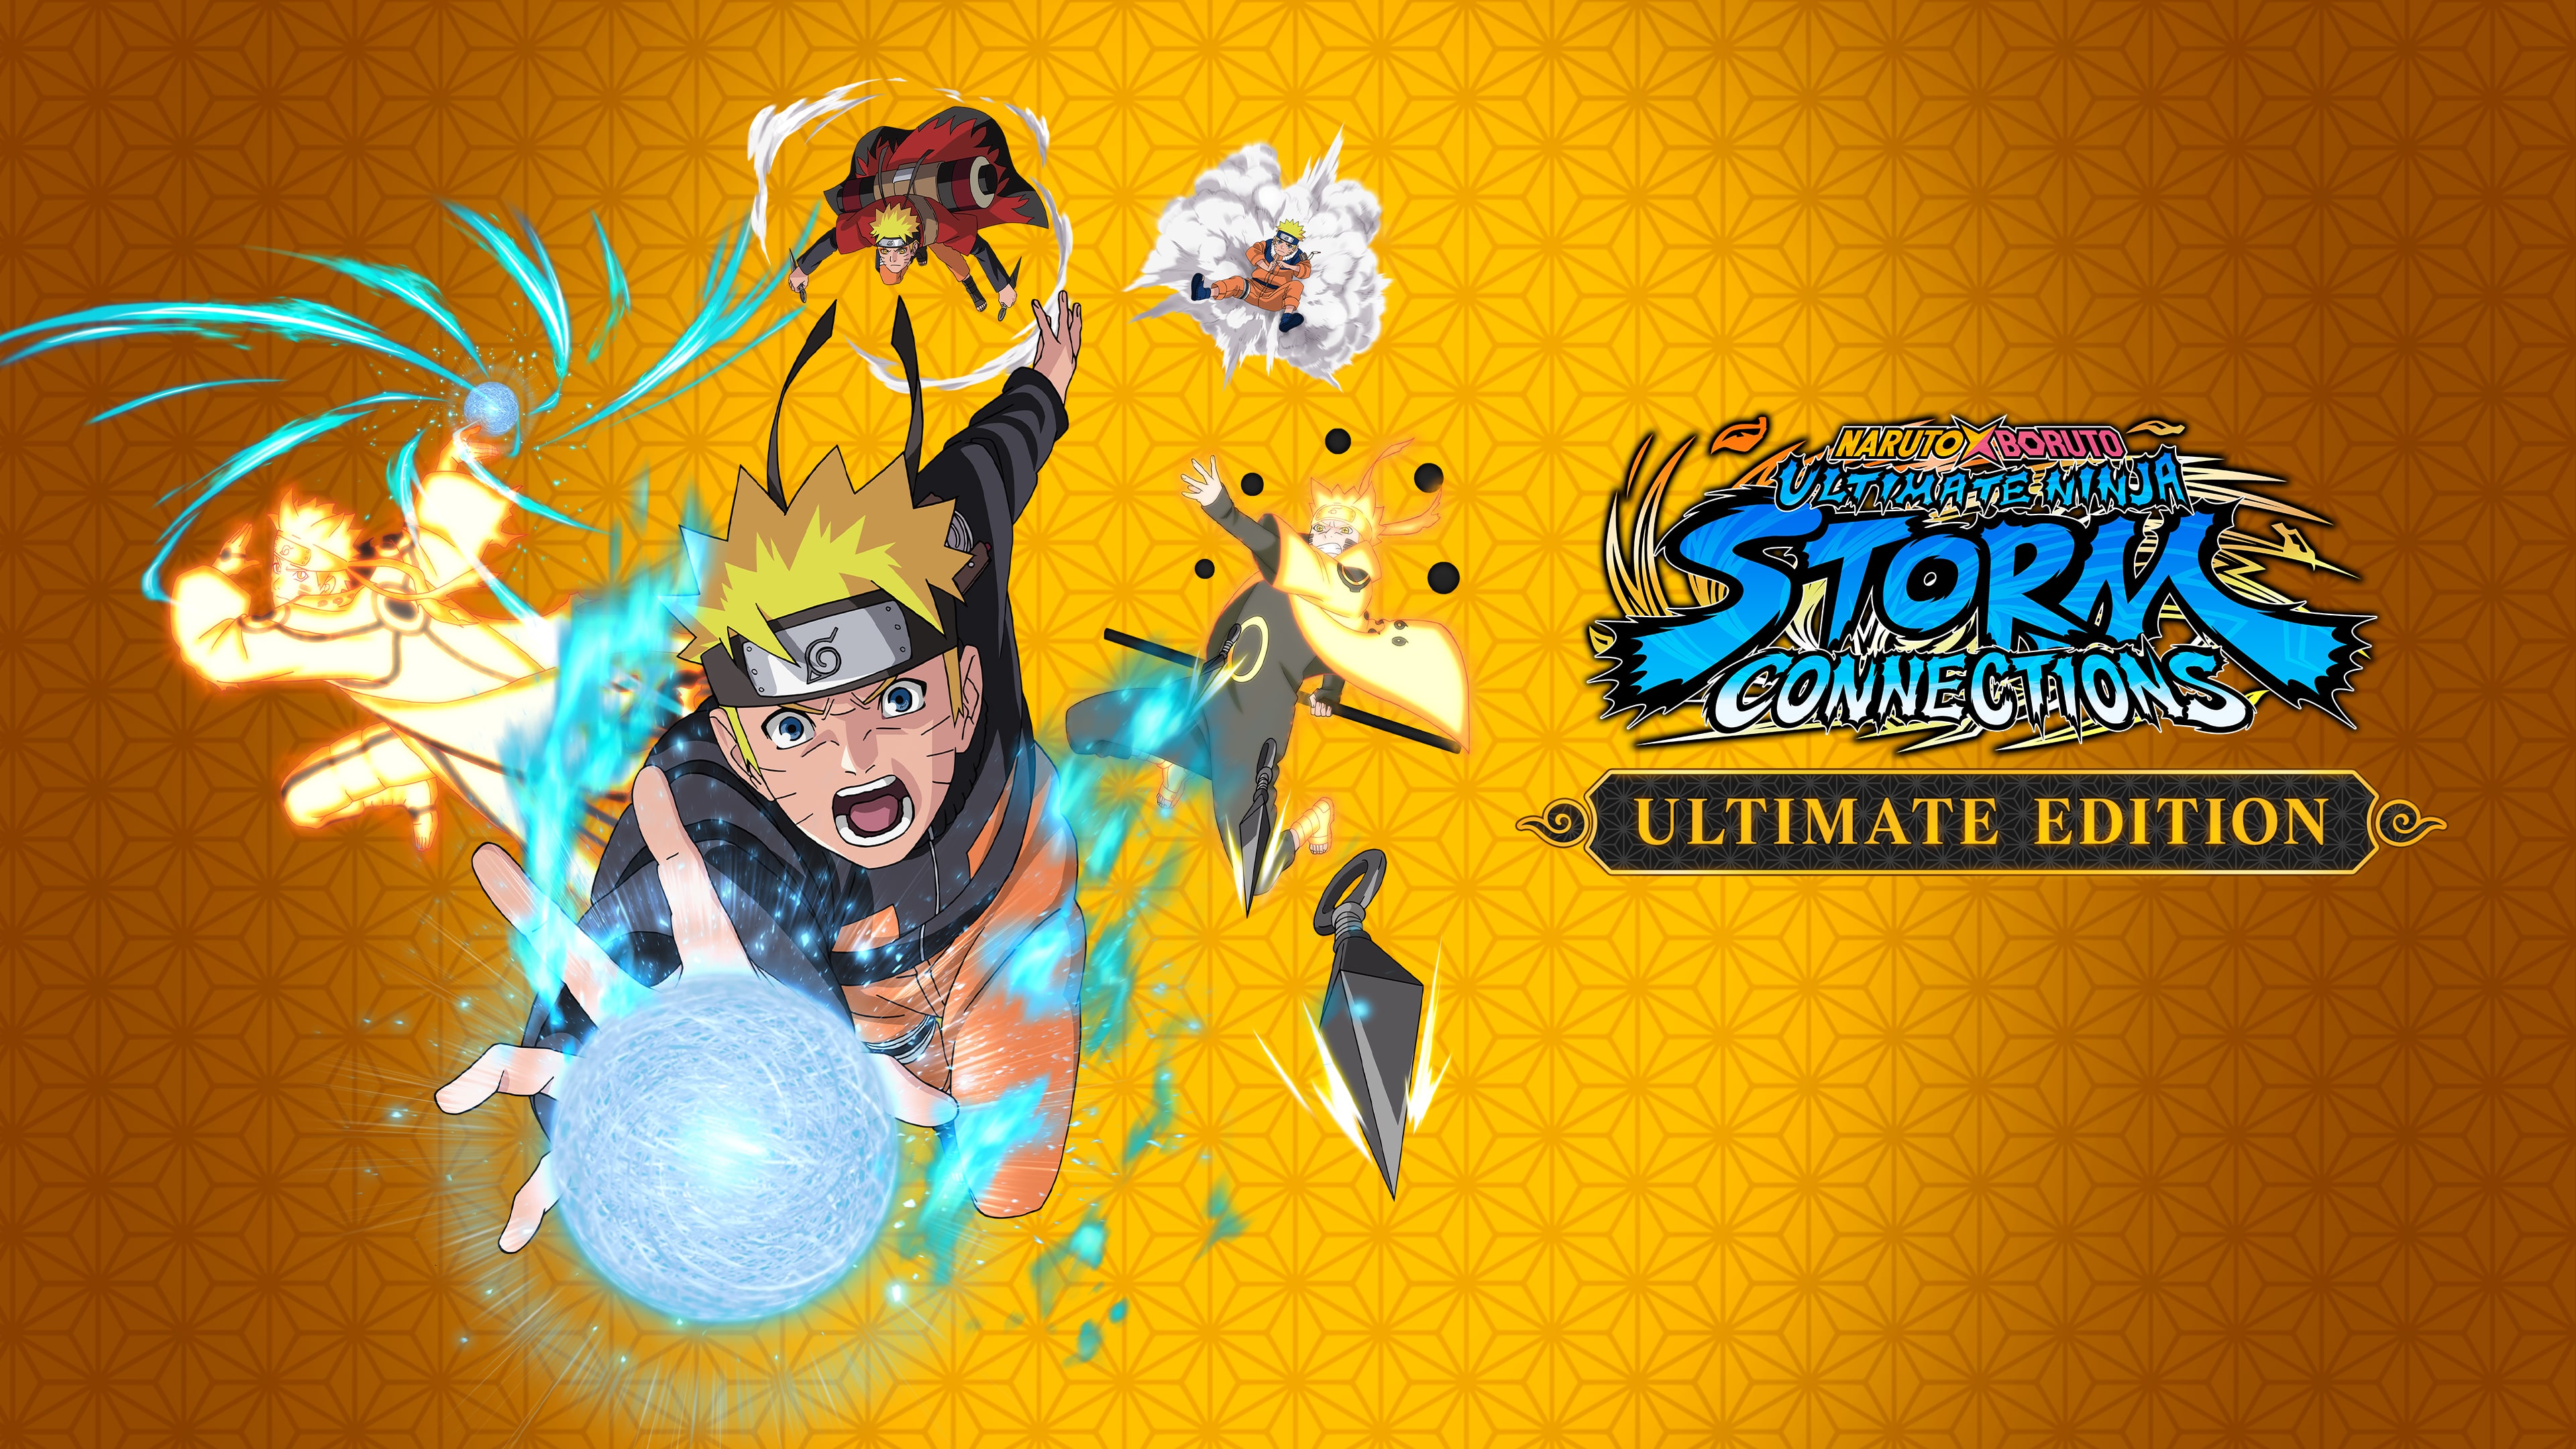 Narutop 99 x 'Naruto x Boruto Ultimate Ninja Storm Connections' Trailer